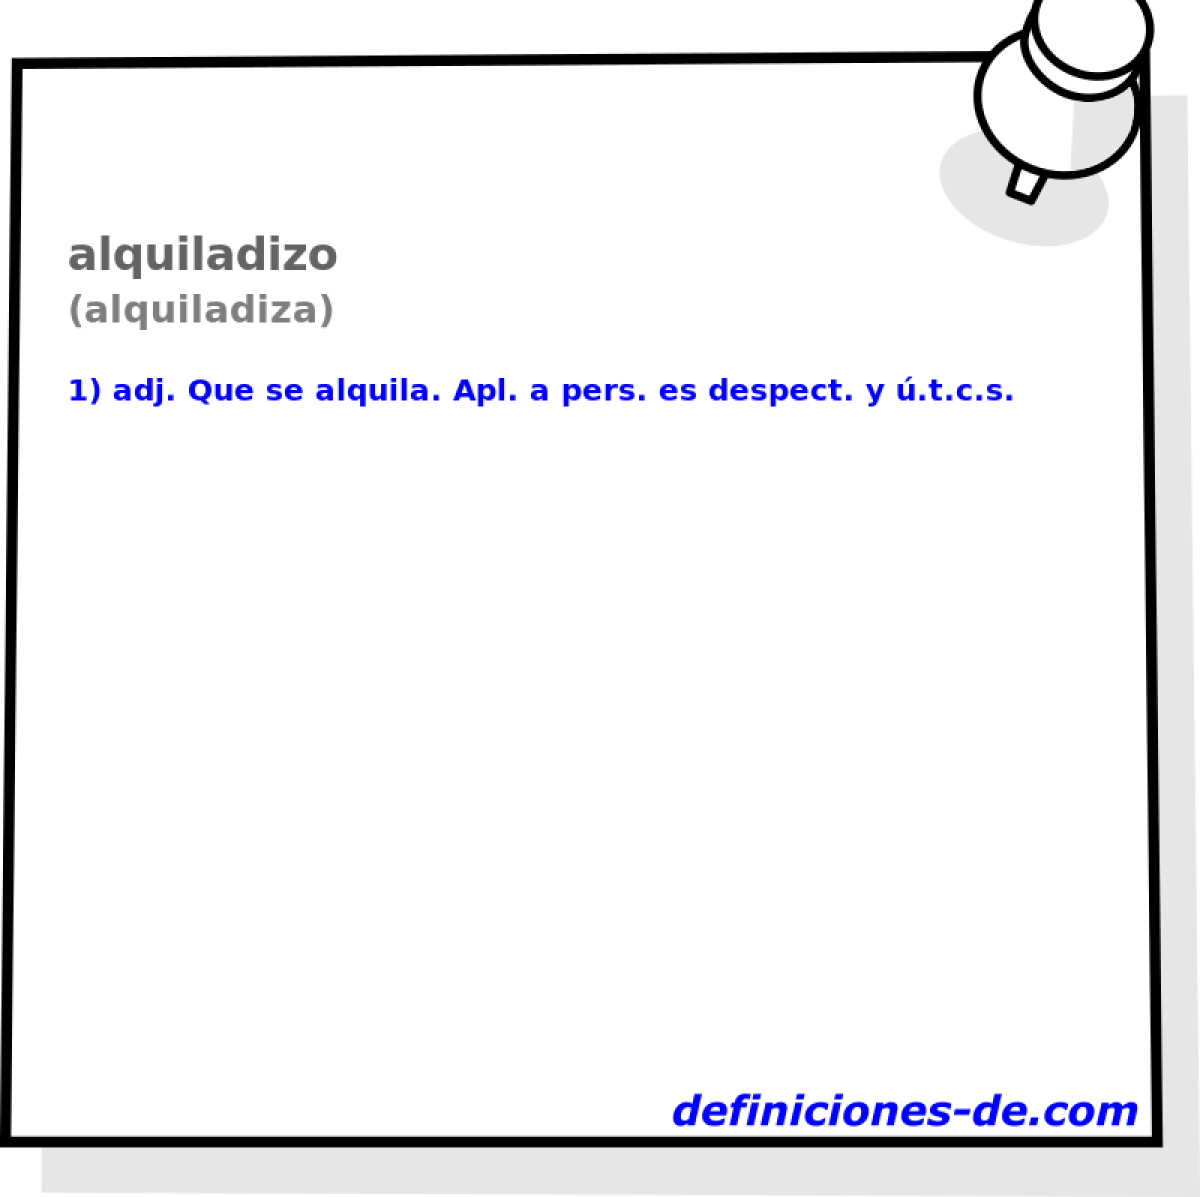 alquiladizo (alquiladiza)